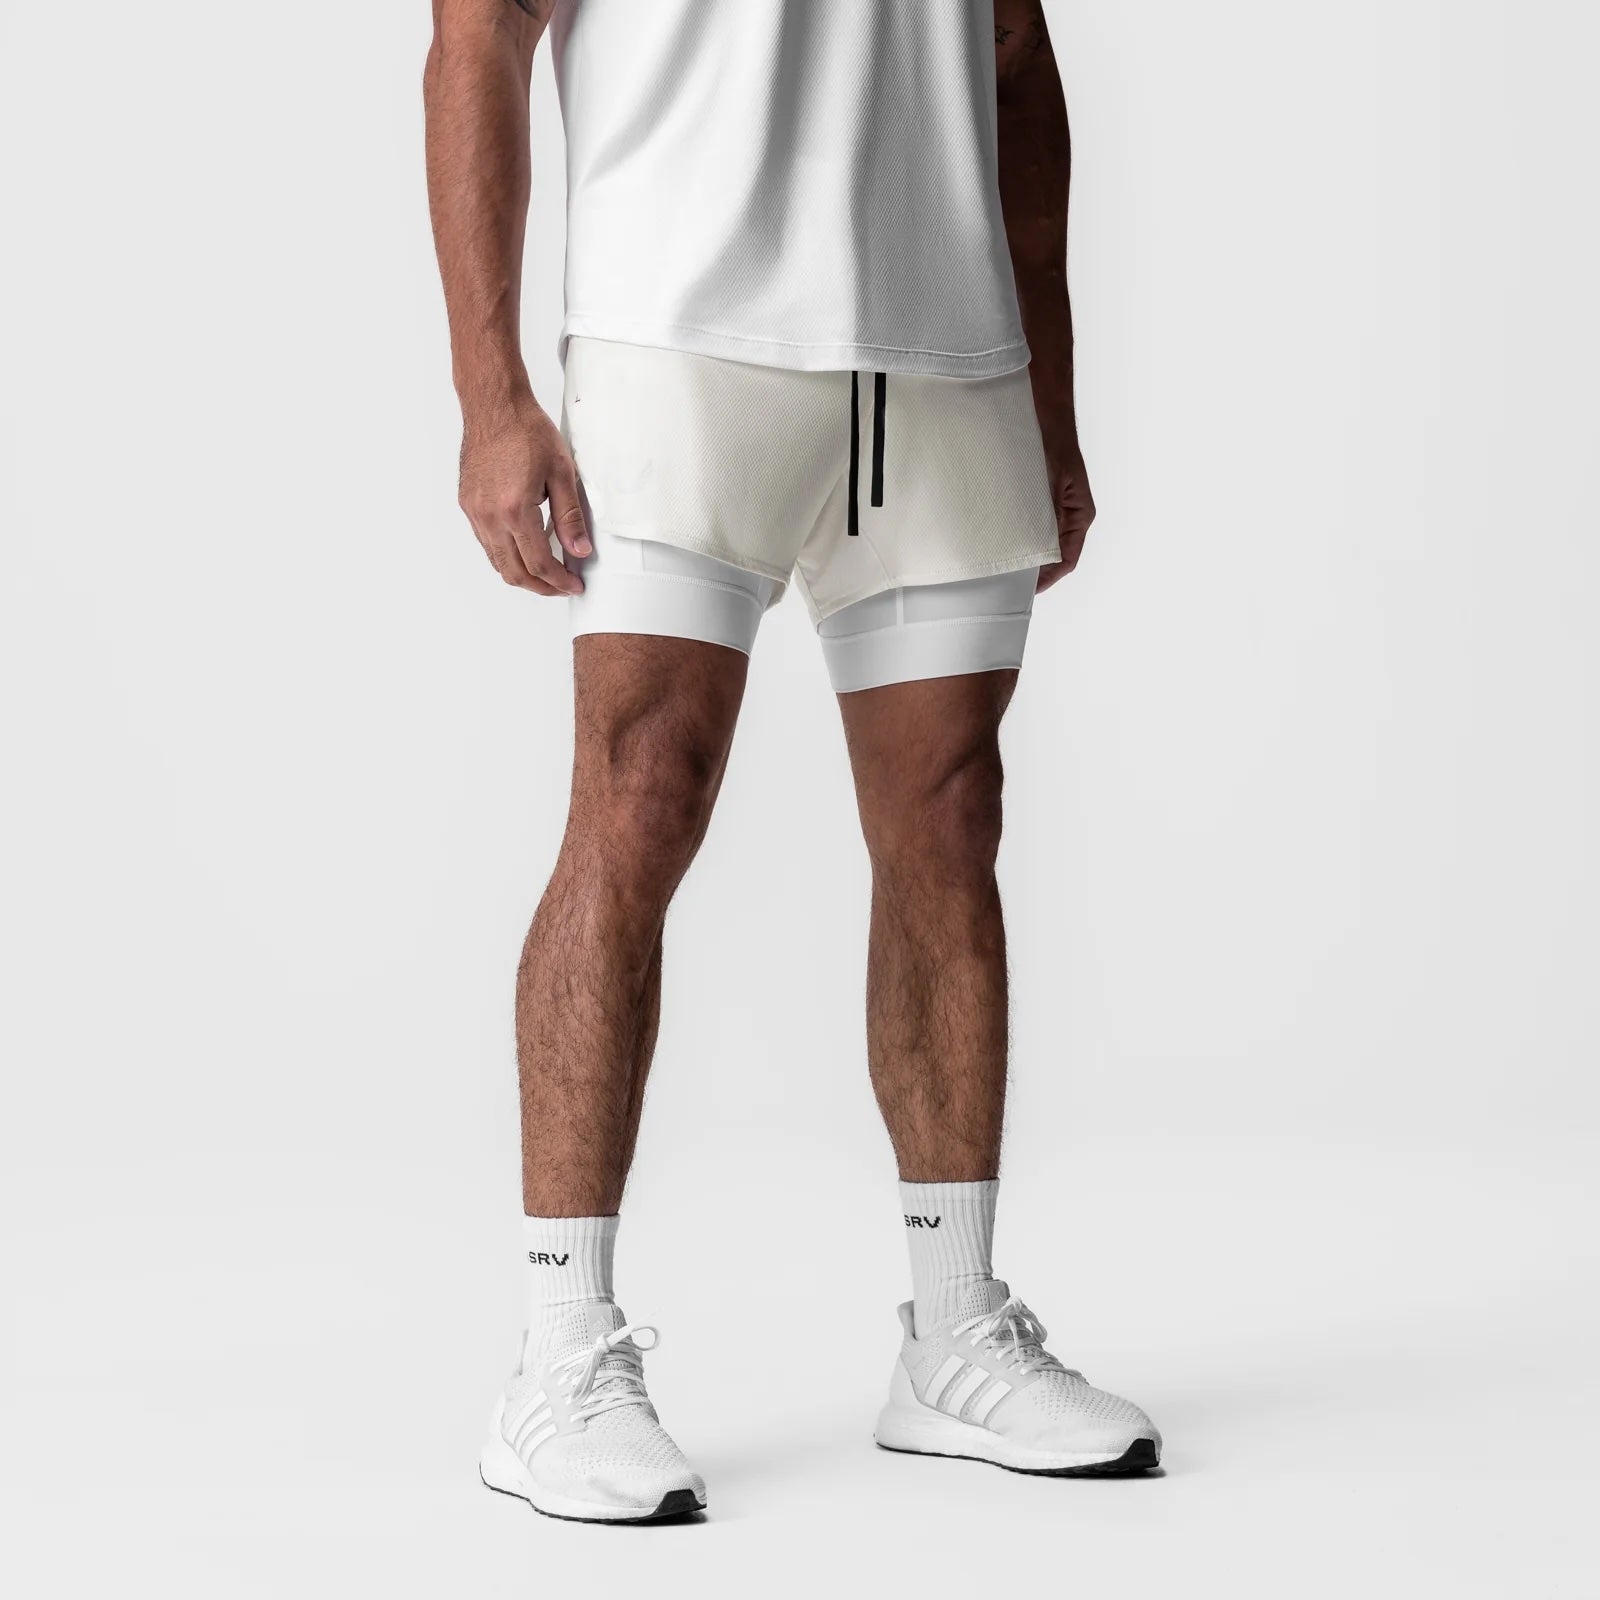 AeroSilver® 5" Liner Shorts